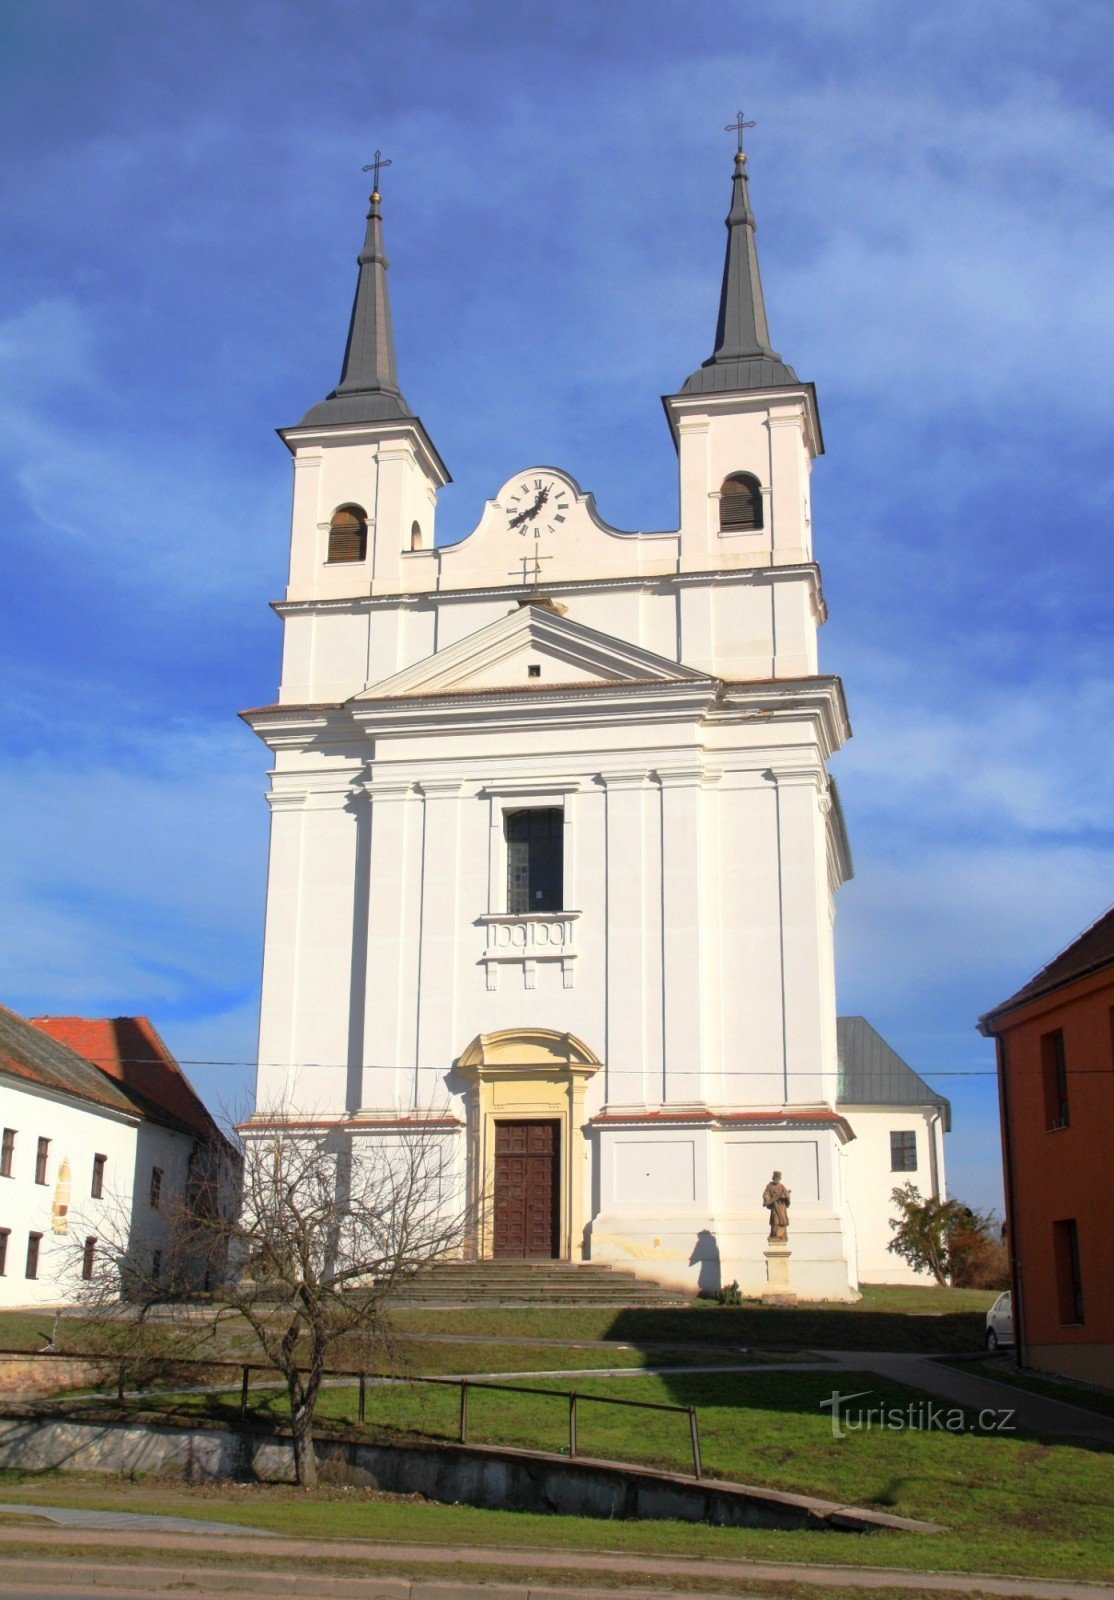 De kerk van de Heilige Drie-eenheid domineert de gemeente